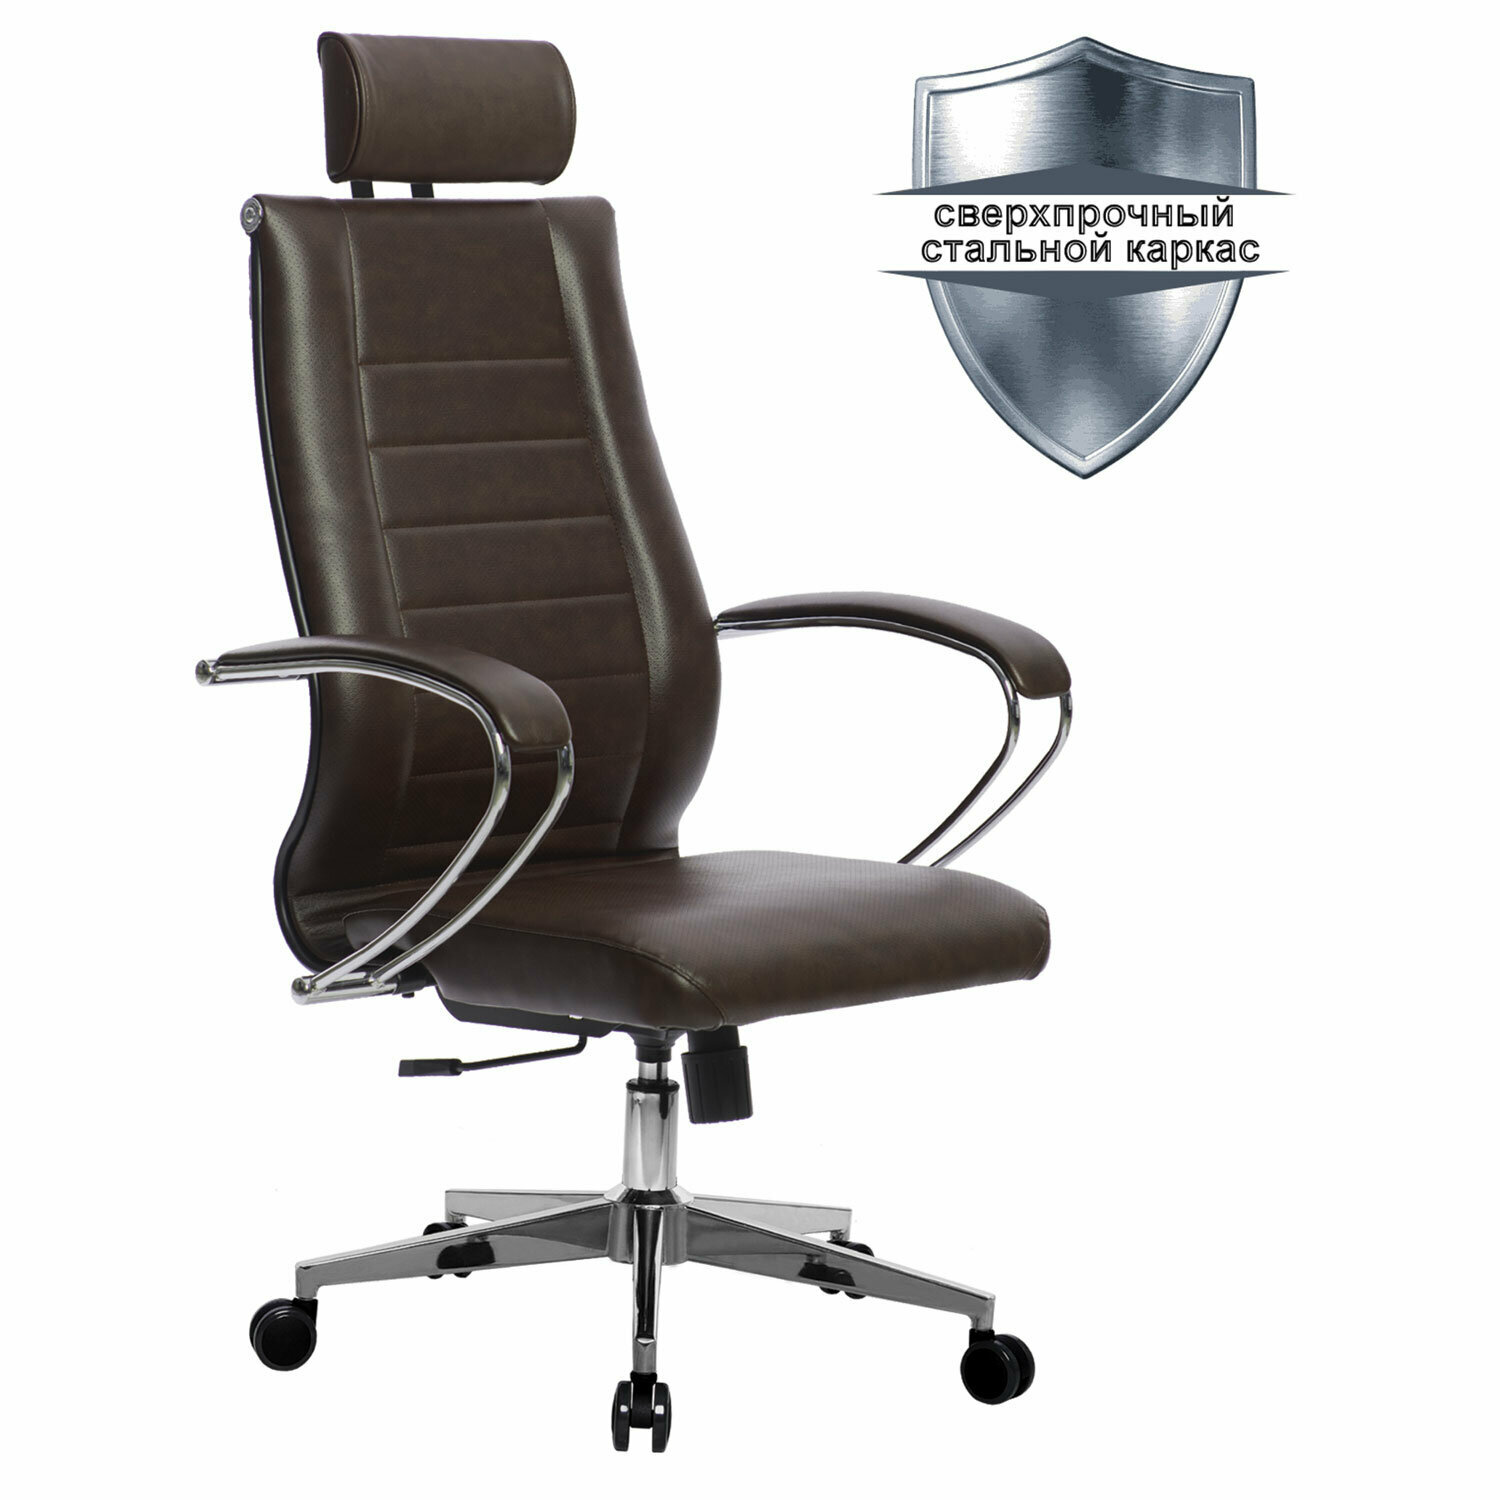 Кресло офисное МЕТТА К-33 хром, рецик. кожа, подголовник, сиденье и спинка мягкие, темно-коричневое